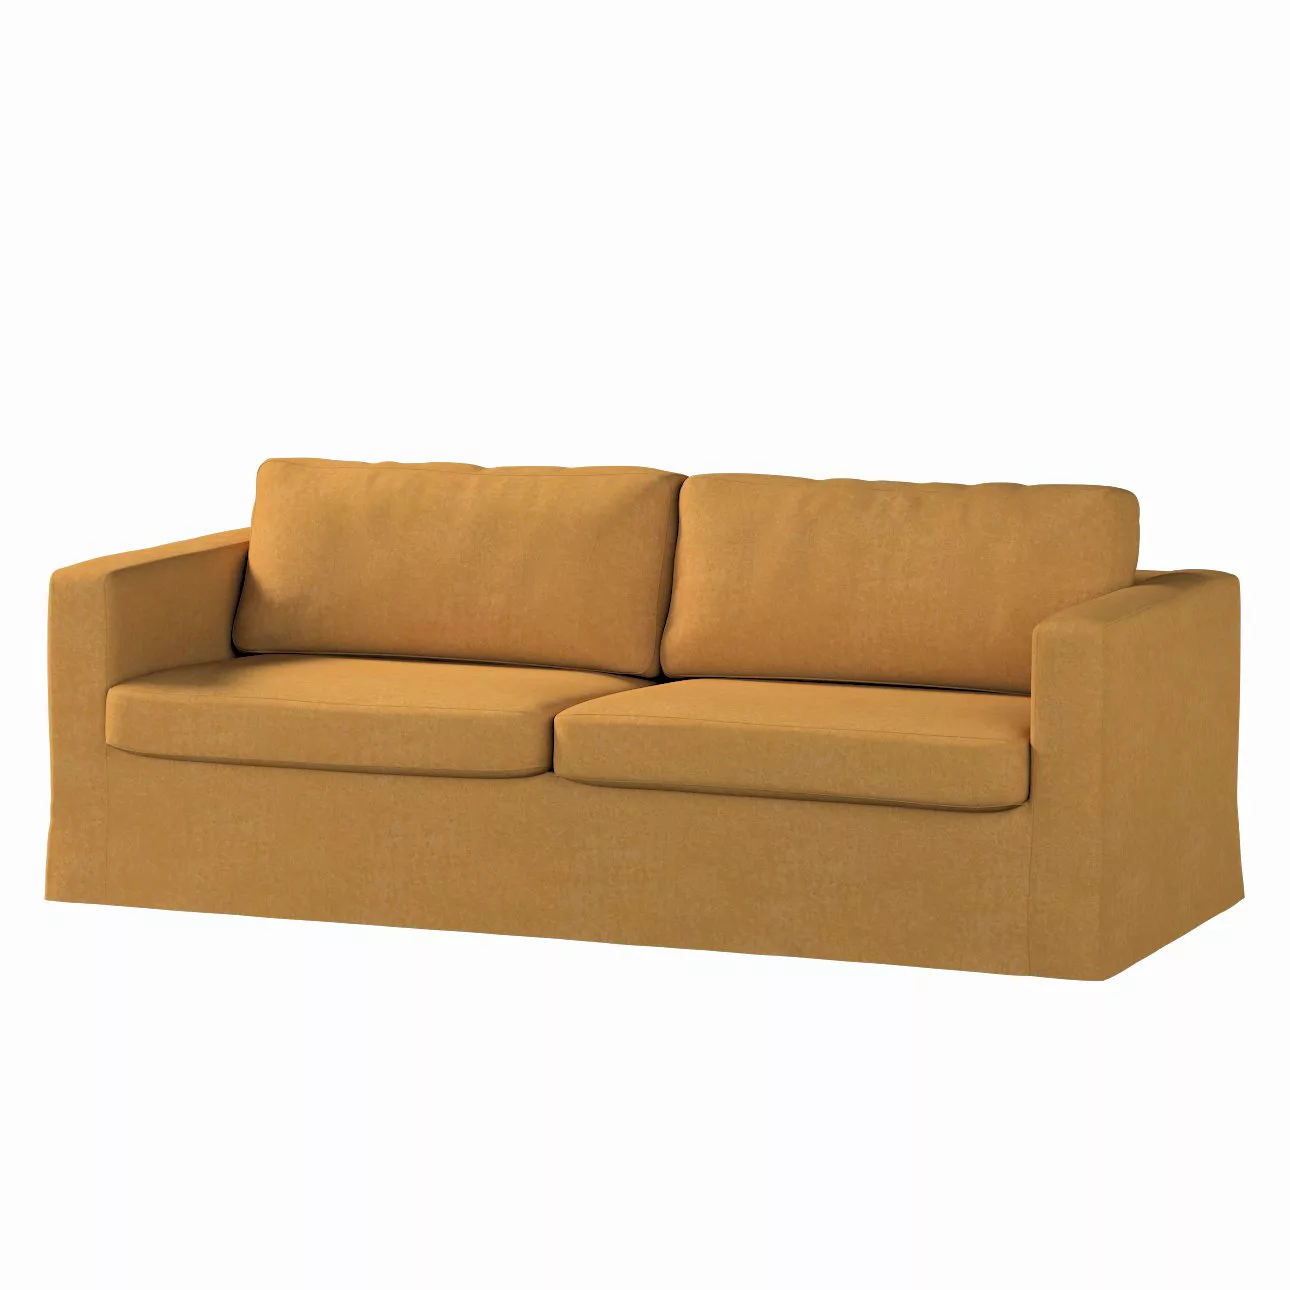 Bezug für Karlstad 3-Sitzer Sofa nicht ausklappbar, lang, honiggelb, Bezug günstig online kaufen